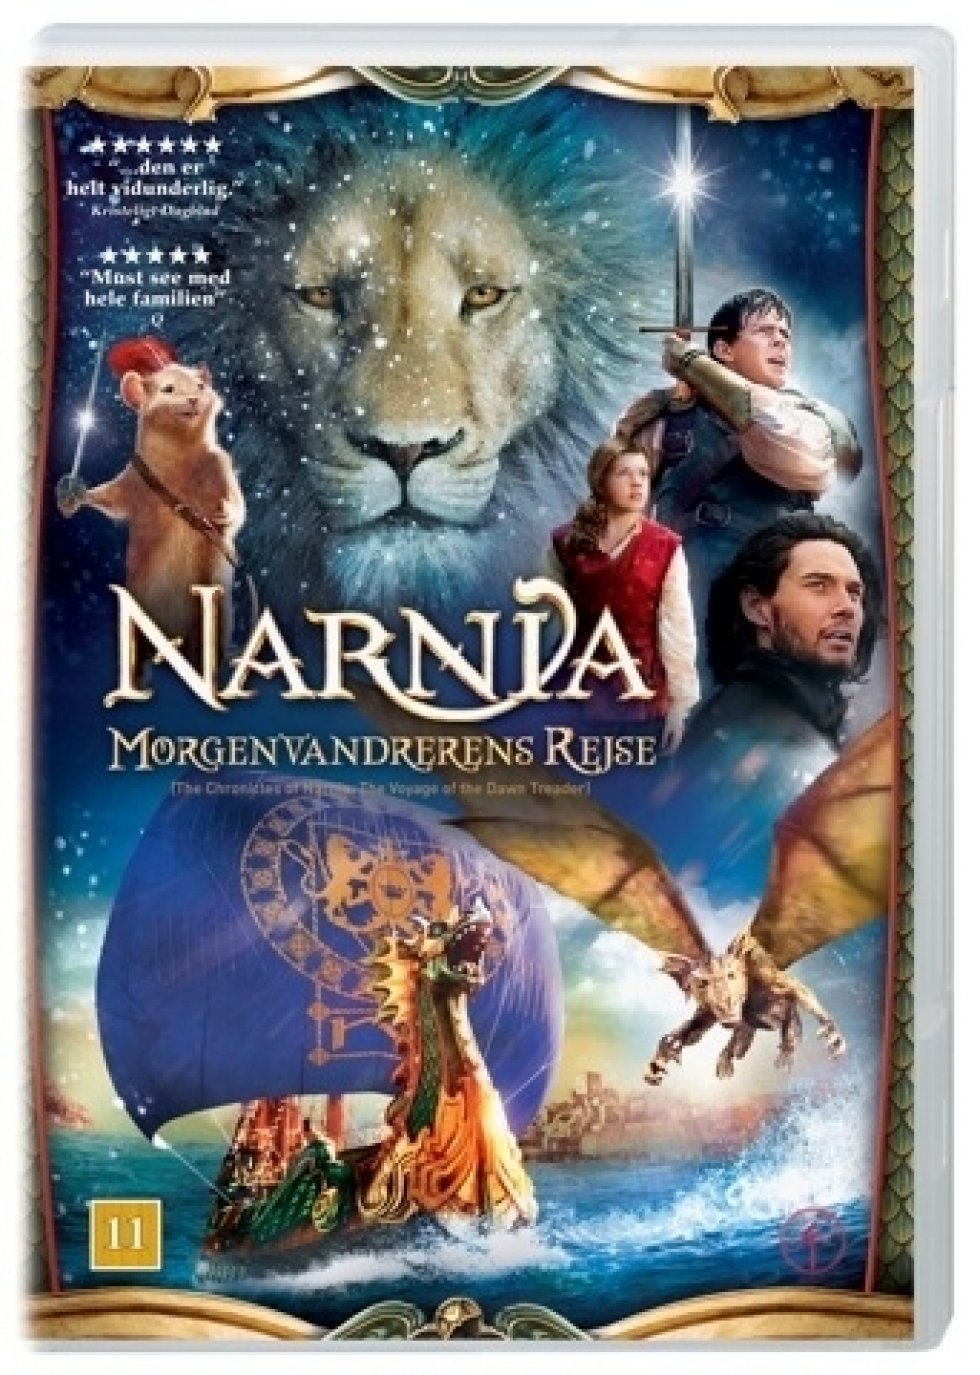 Narnia - Morgenvandrerens rejse